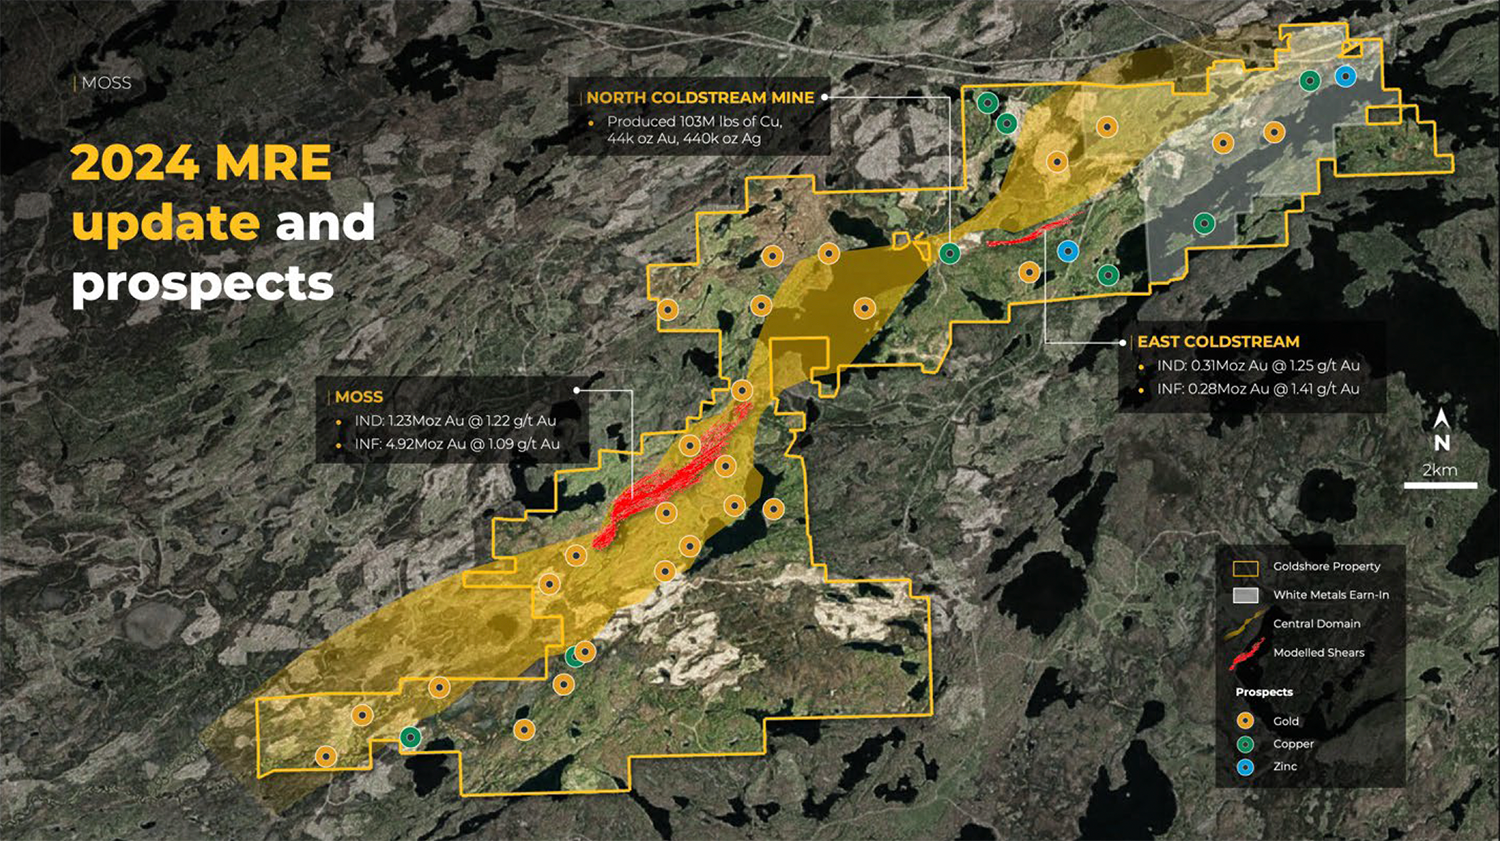 Das Bild zeigt eine geologische Übersichtskarte des Moss Gold Projekts mit den Standorten des Moss und East Coldstream Deposits, farblich gekennzeichneten Claims und Prospektionszielen für Gold, Kupfer und Zink.